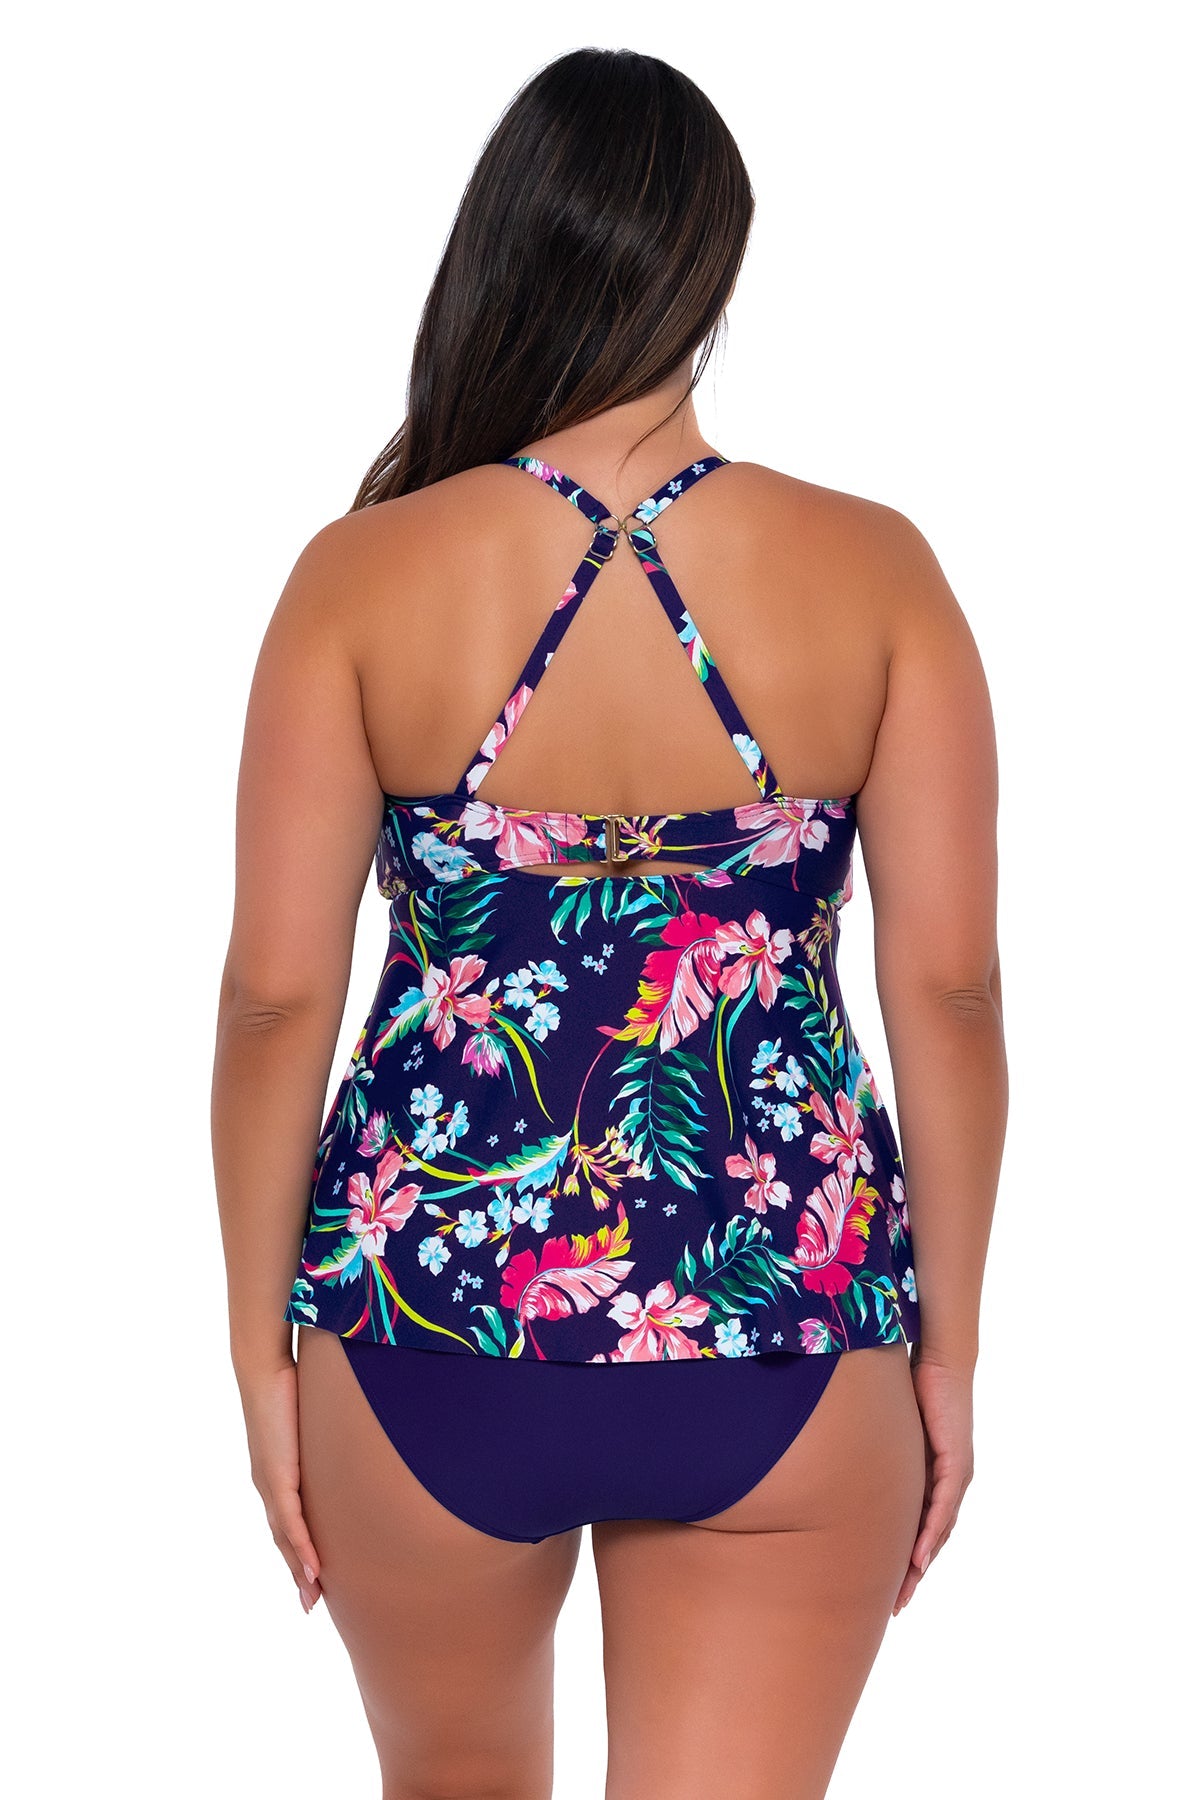 Sunsets Women's Swimwear Escape Island Getaway Tori Tankini Bikini Top